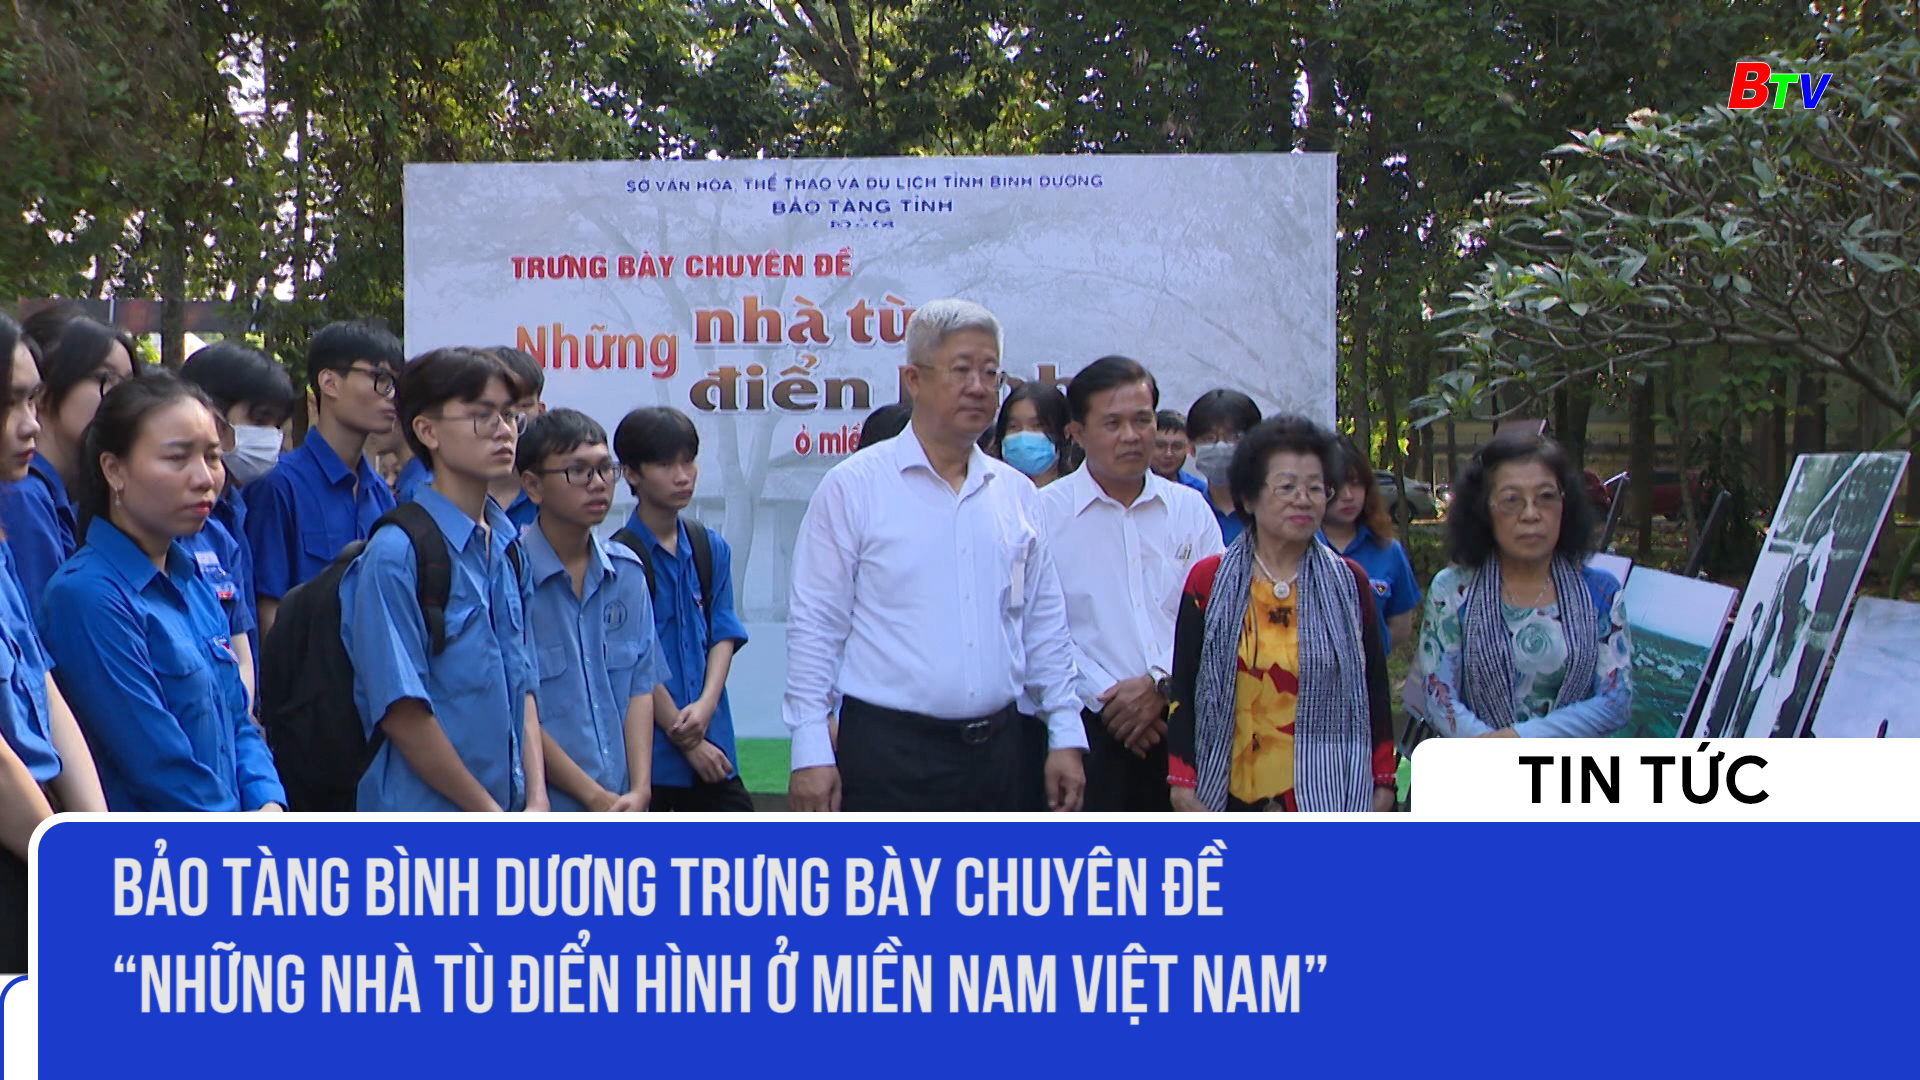 Bảo tàng Bình Dương trưng bày Chuyên đề “Những nhà tù điển hình ở miền Nam Việt Nam”